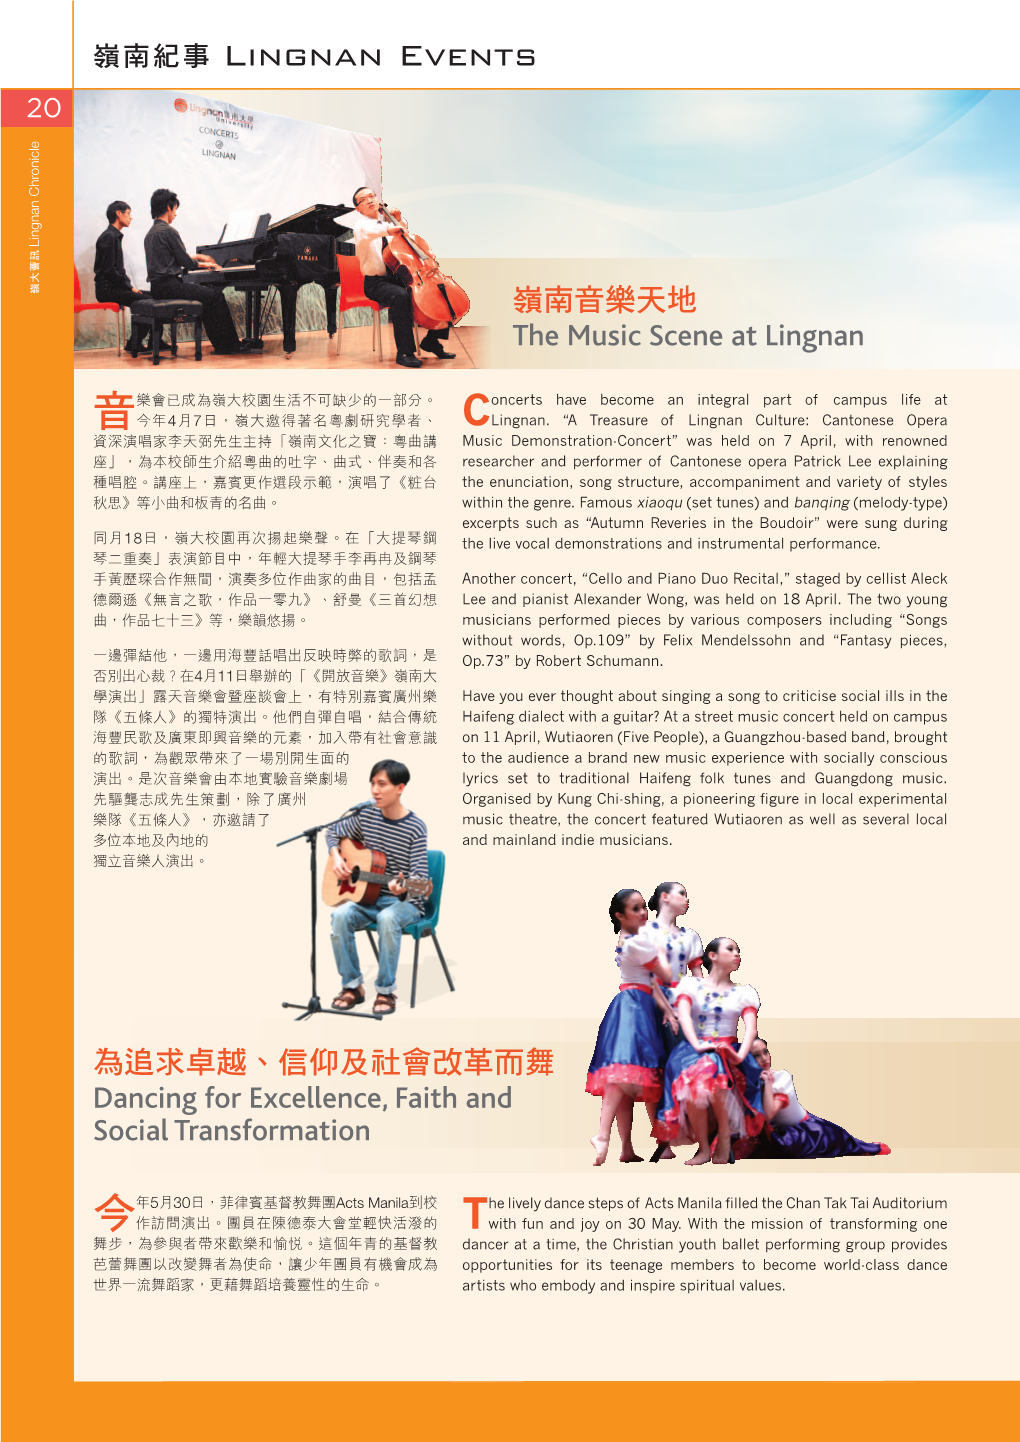 嶺南音樂天地 the Music Scene at Lingnan